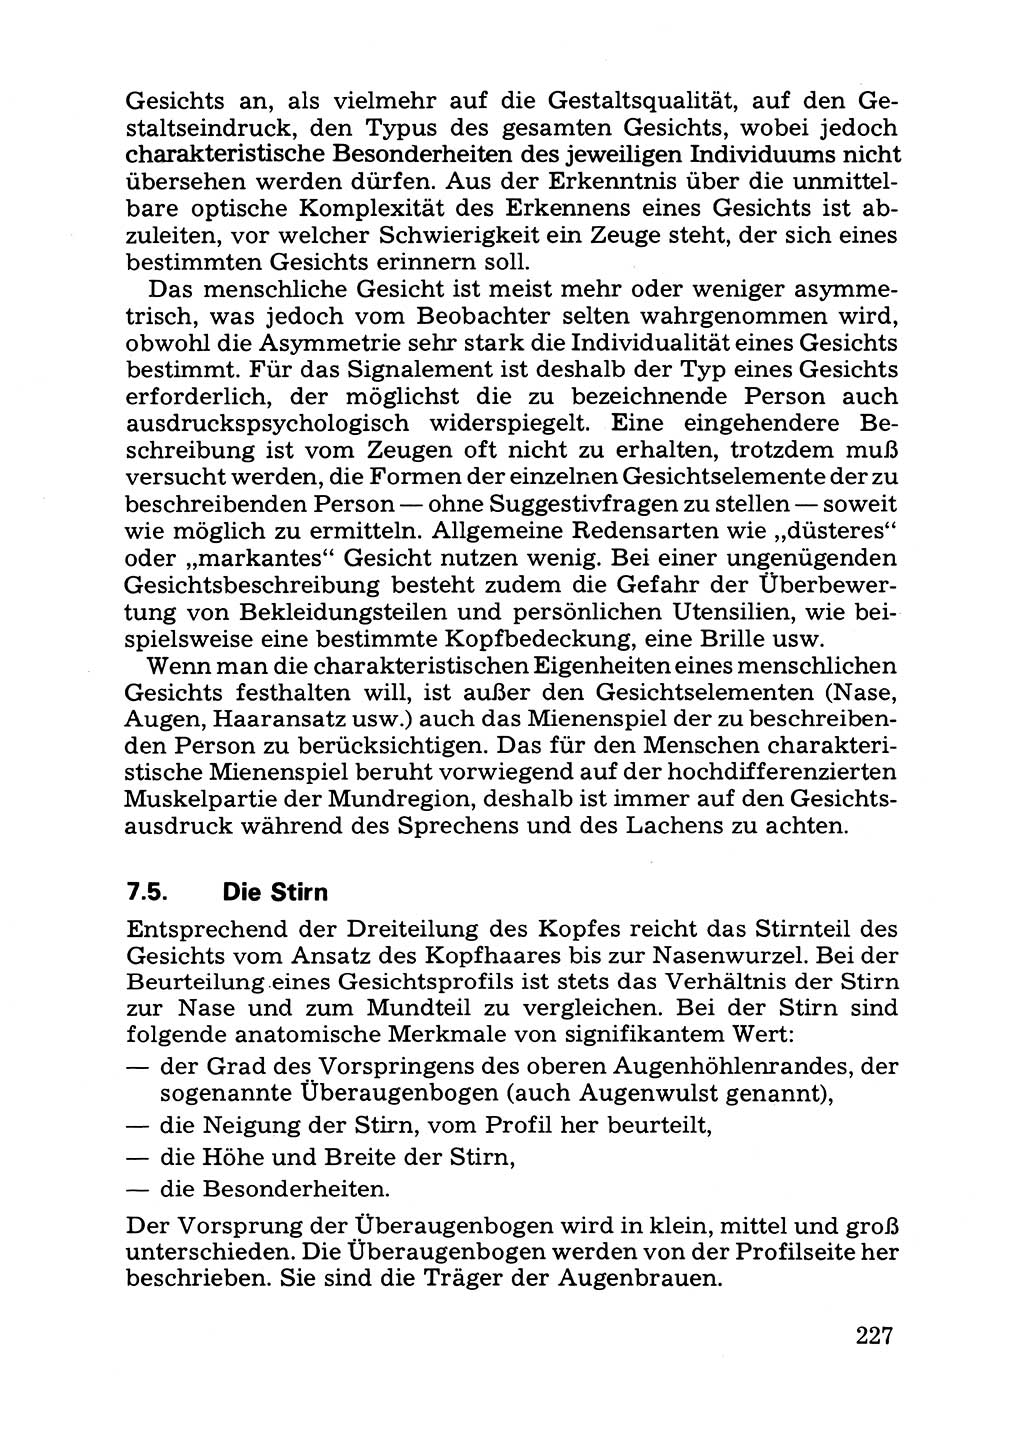 Das subjektive Porträt [Deutsche Demokratische Republik (DDR)] 1981, Seite 227 (Subj. Port. DDR 1981, S. 227)